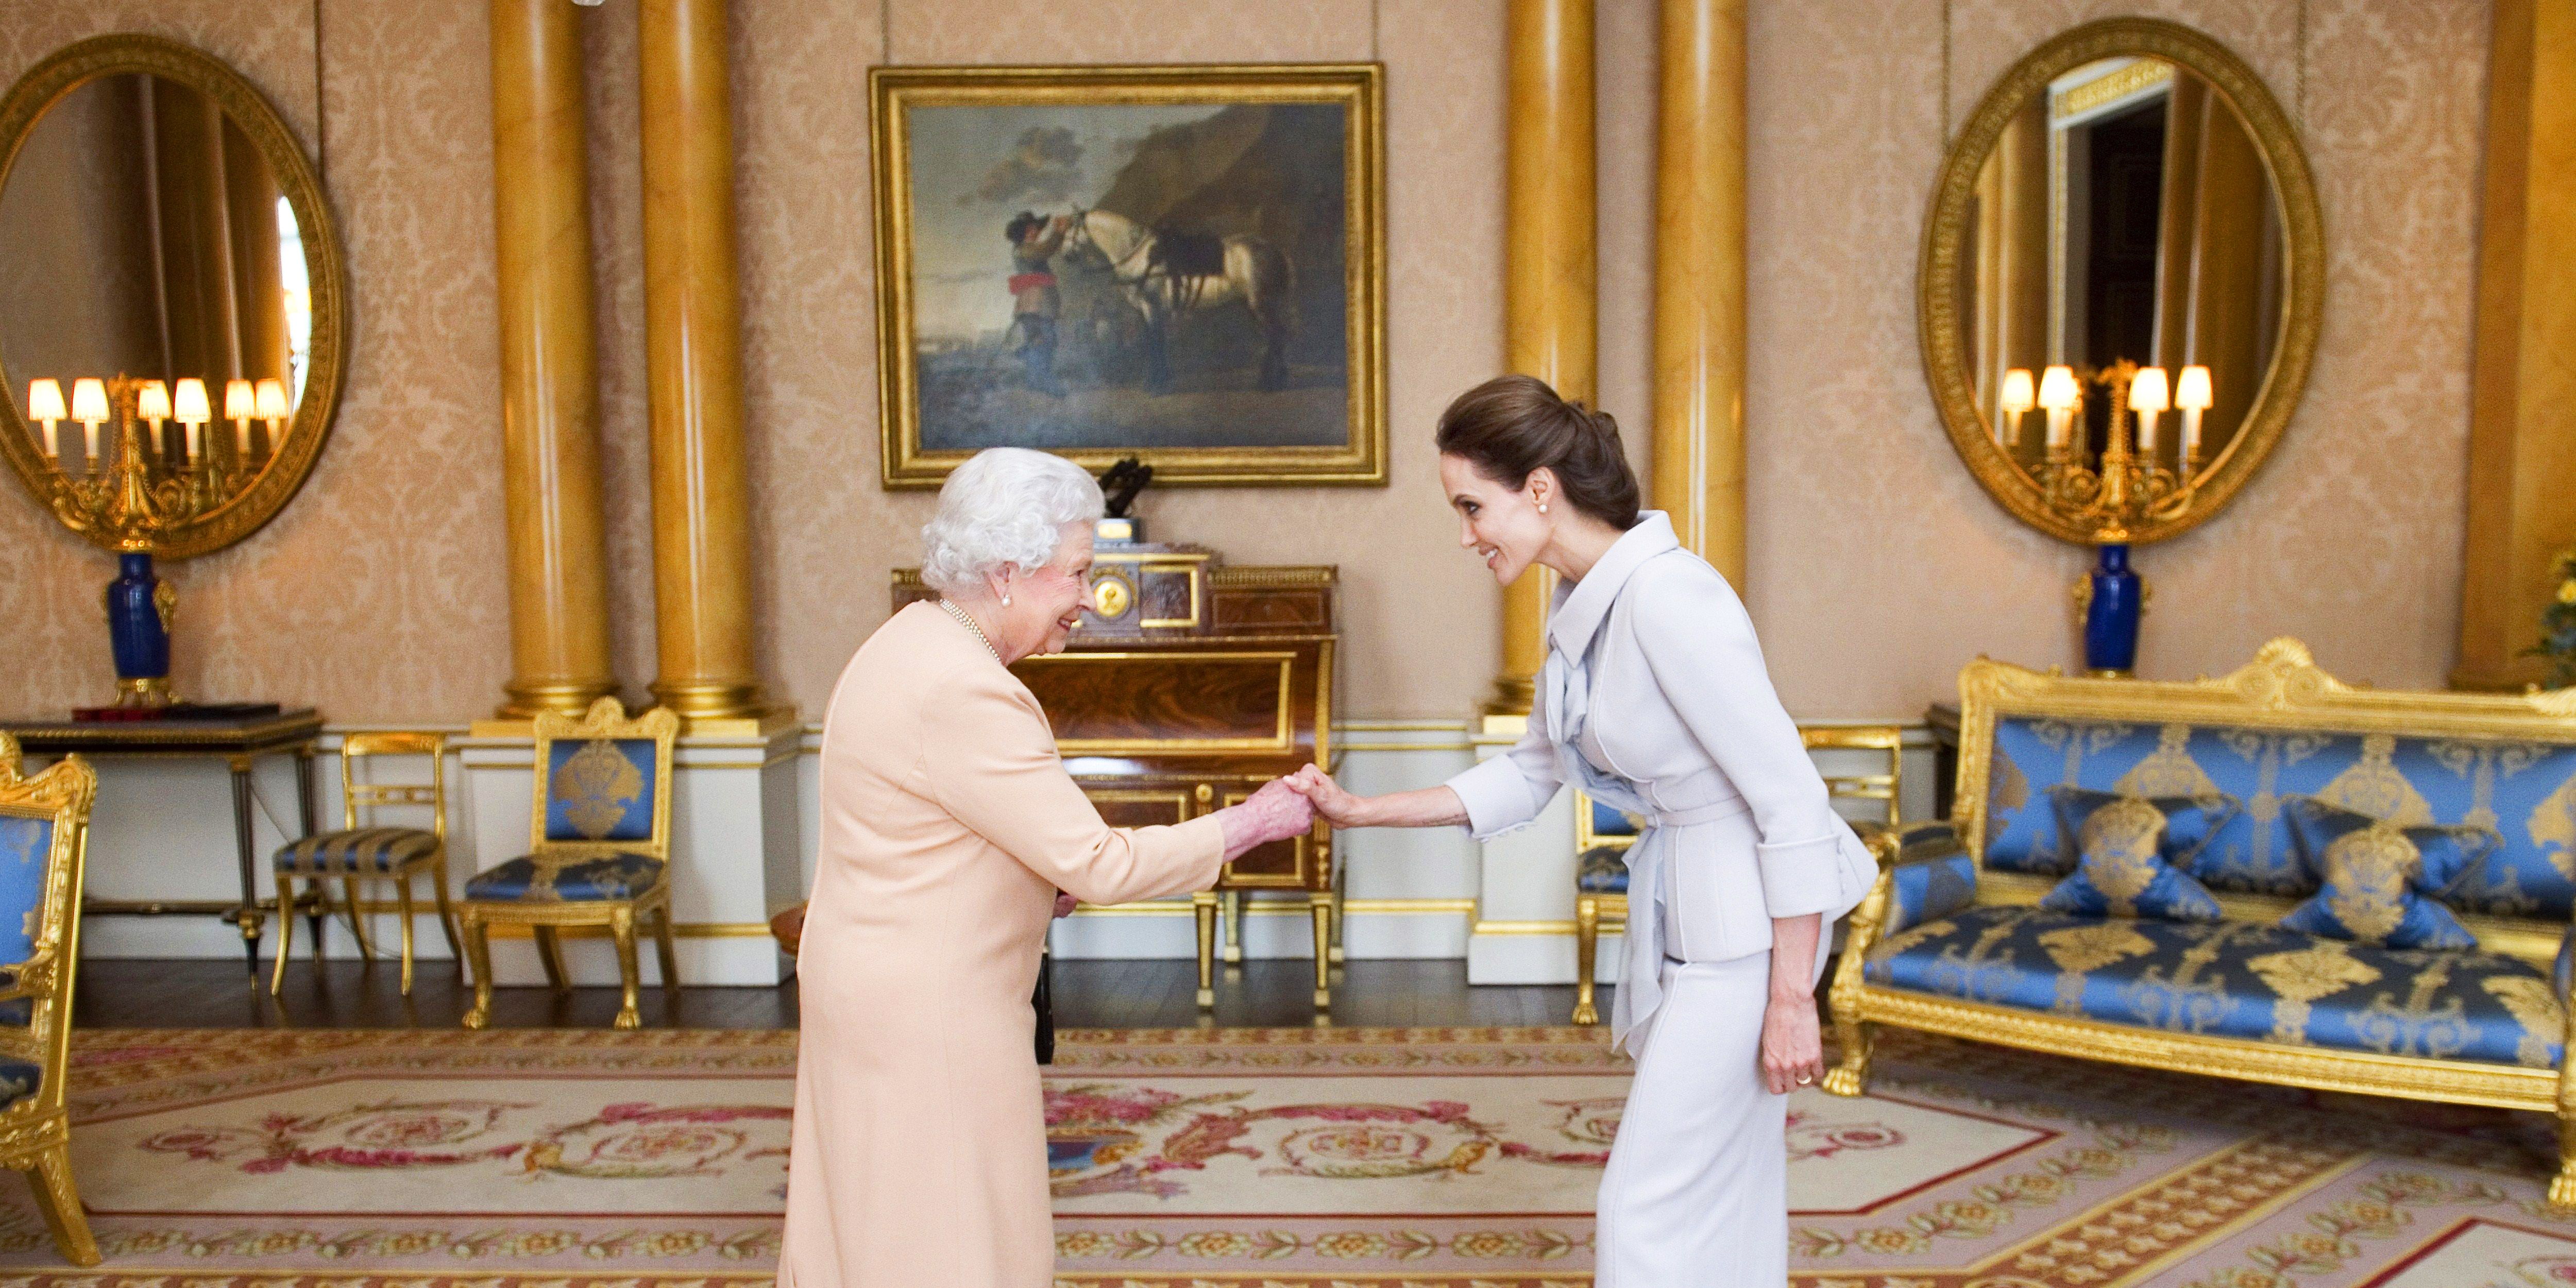 Celebrities Meeting Queen Elizabeth Photos | Celebrities and